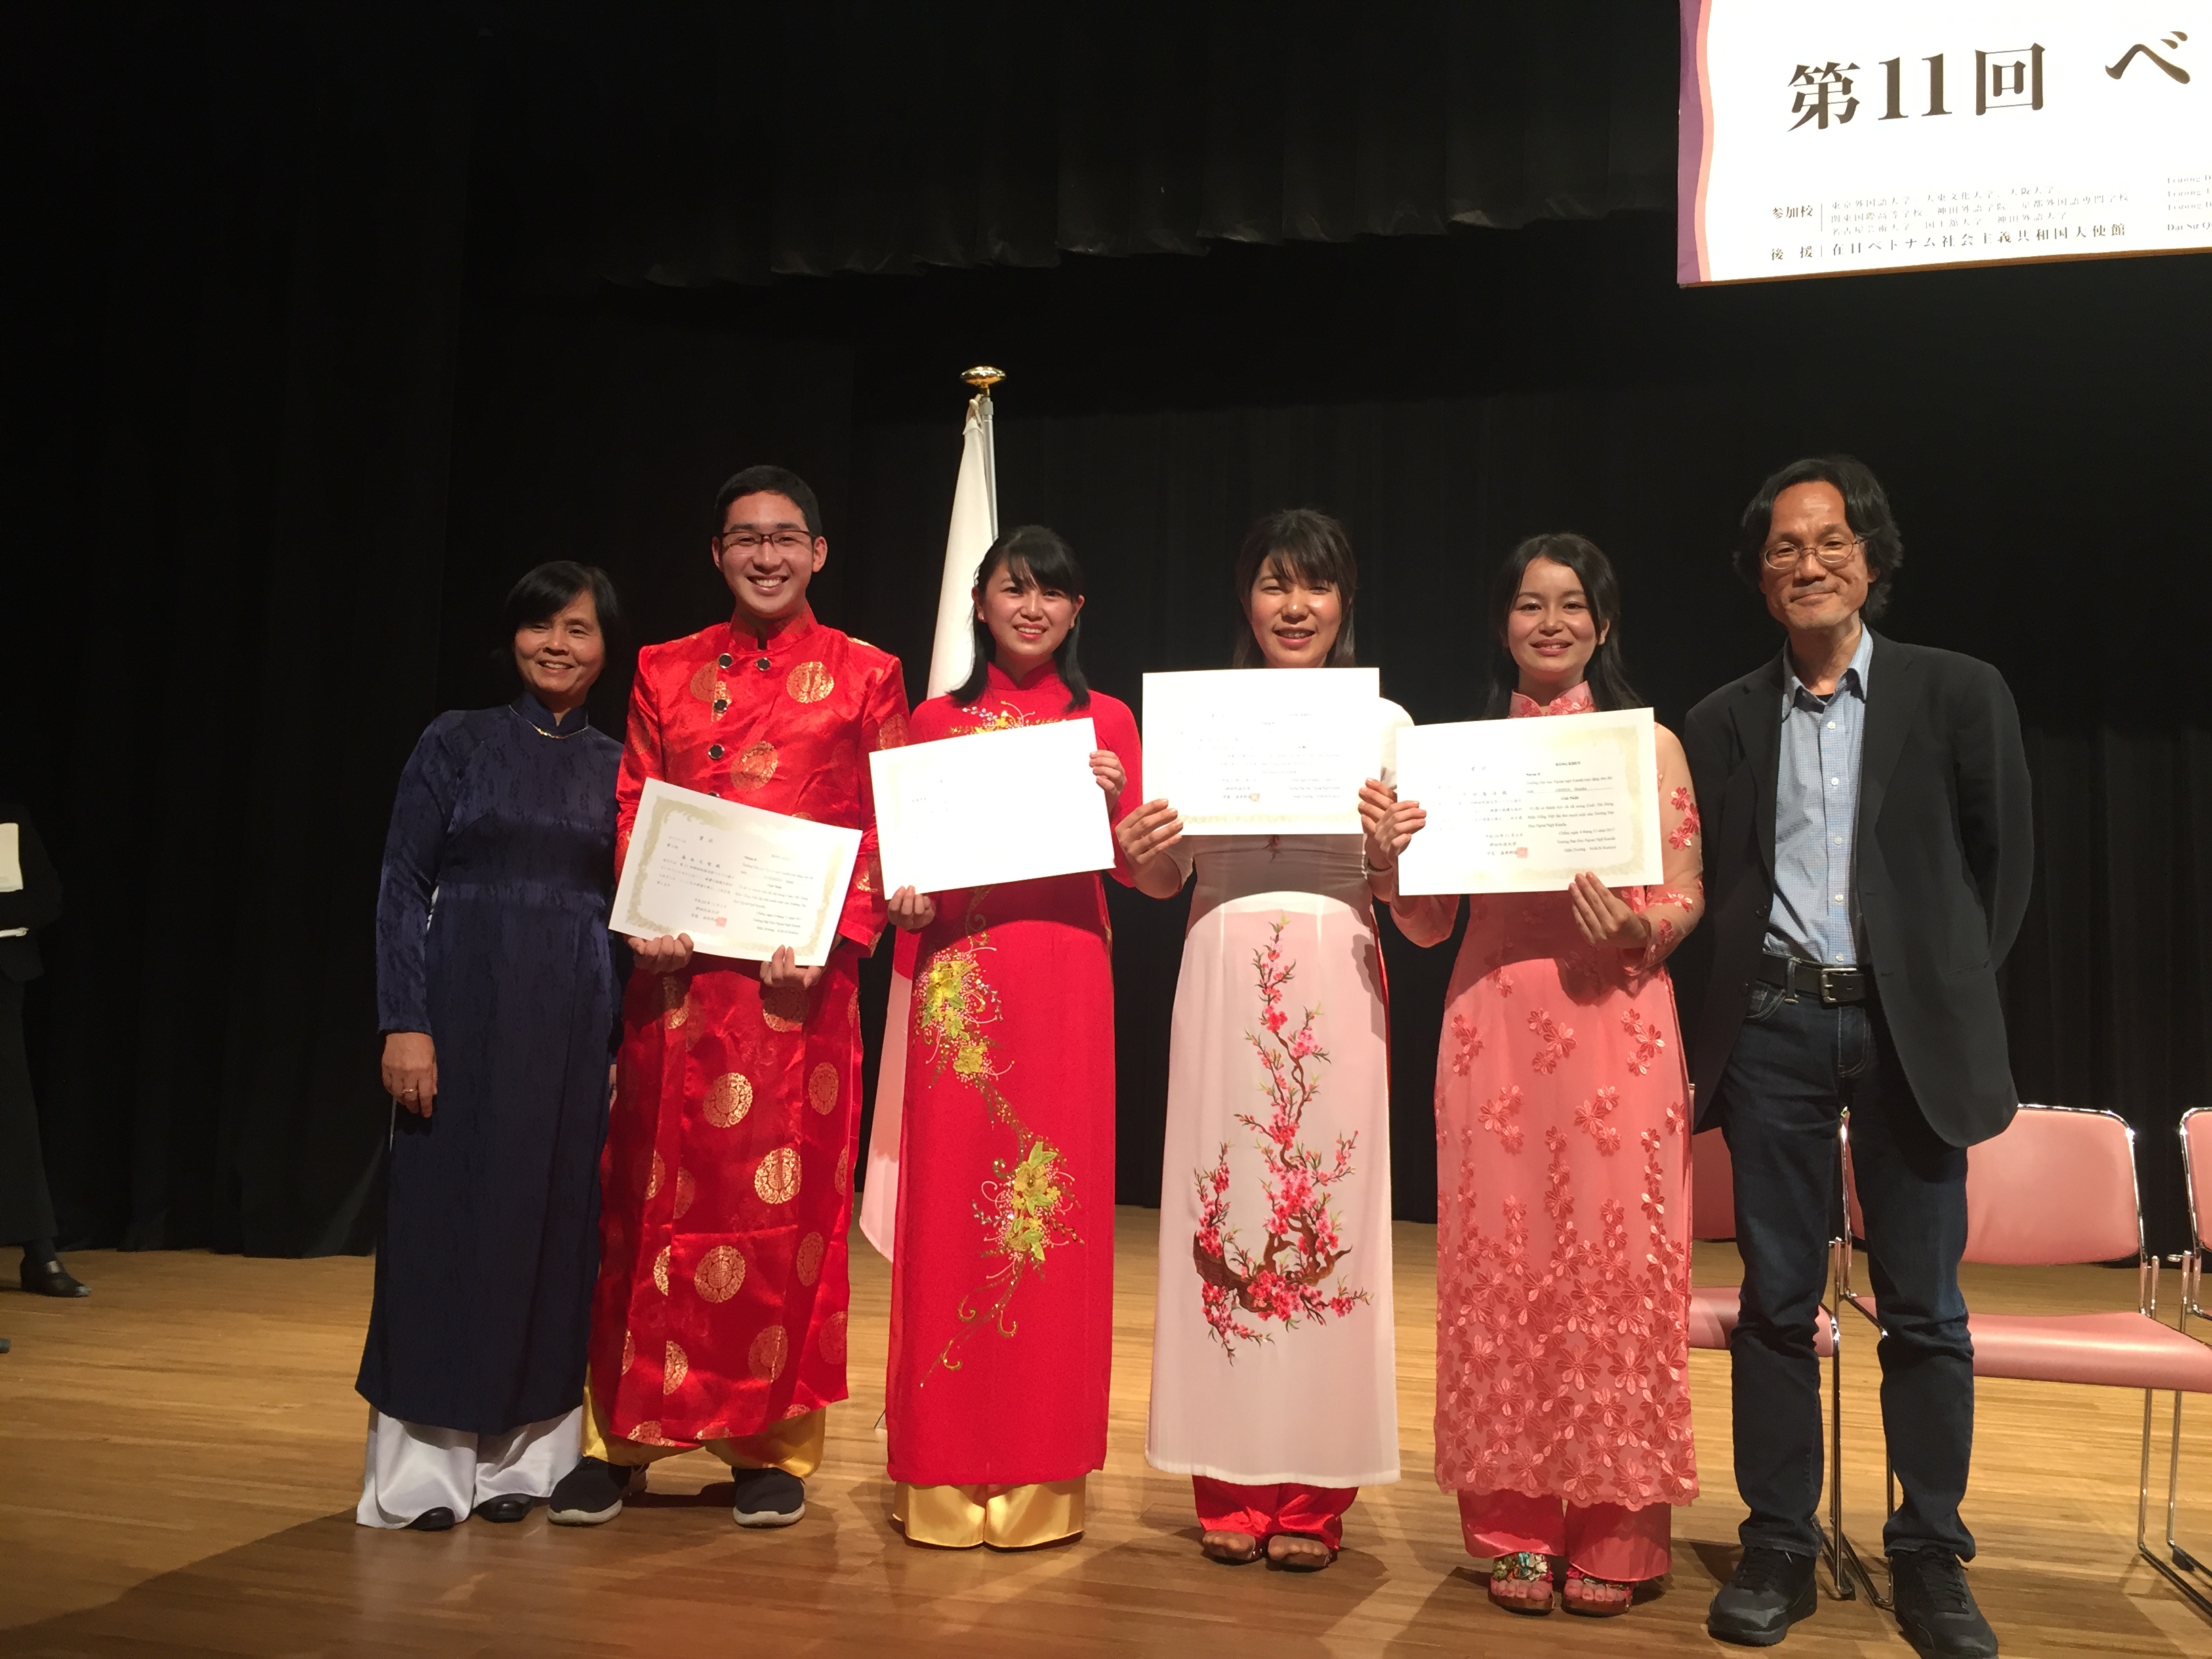 阪大生4名が「第11回ベトナム語スピーチコンテスト」で最優秀賞受賞など入賞